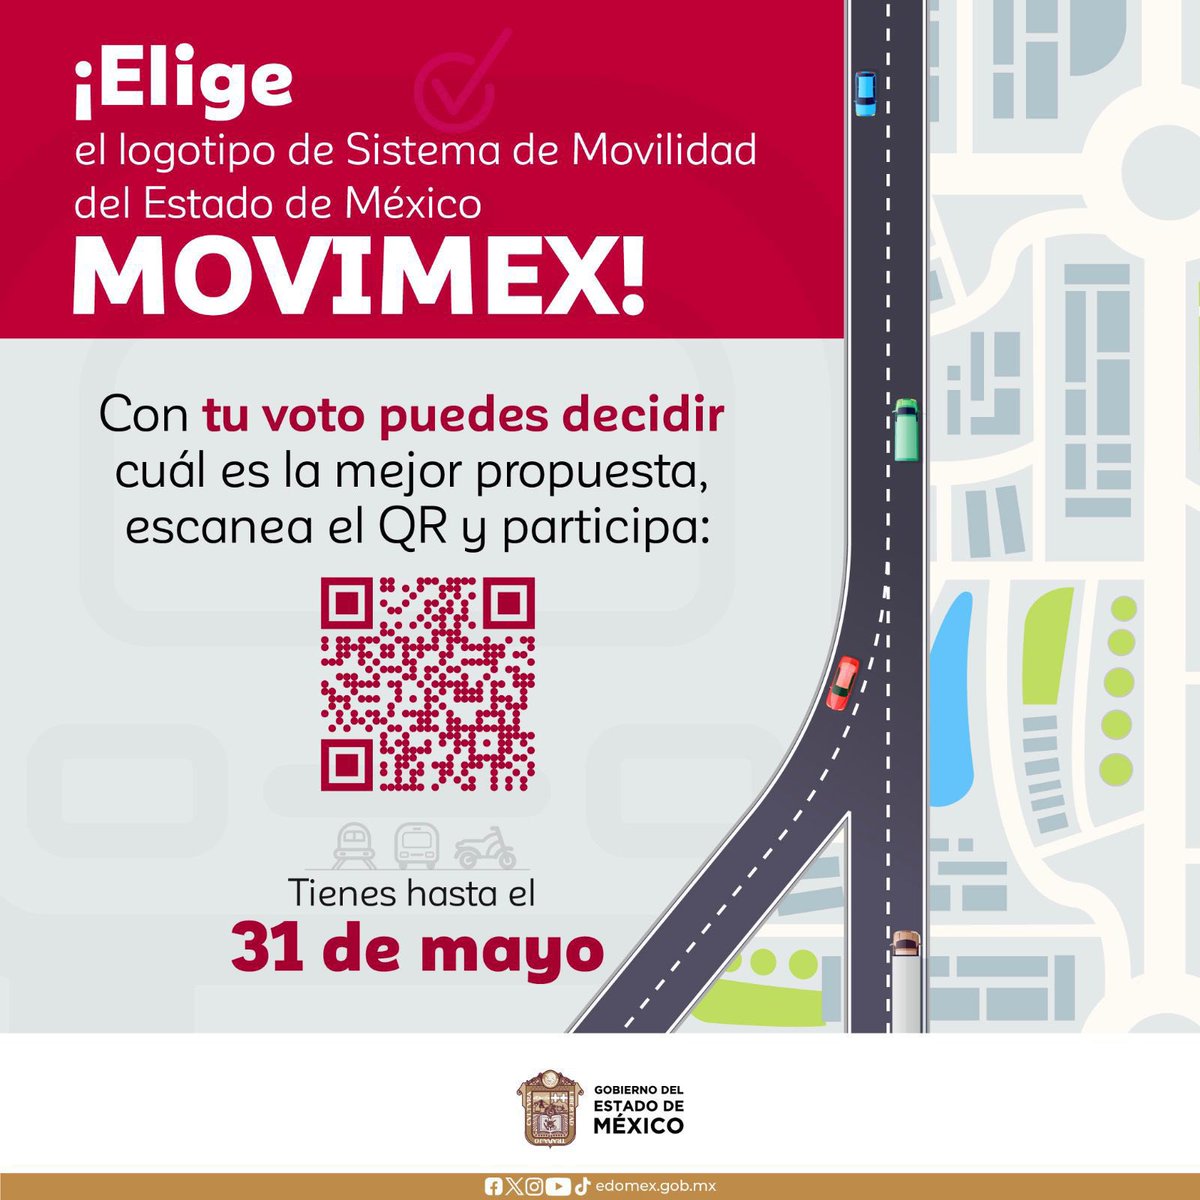 Participa en la selección del logotipo para el Sistema de Movilidad del Estado de México. Tienes hasta el 31 de mayo para votar por tu favorito. 📌Accede al QR o al siguiente enlace: smovilidad.edomex.gob.mx y vota.